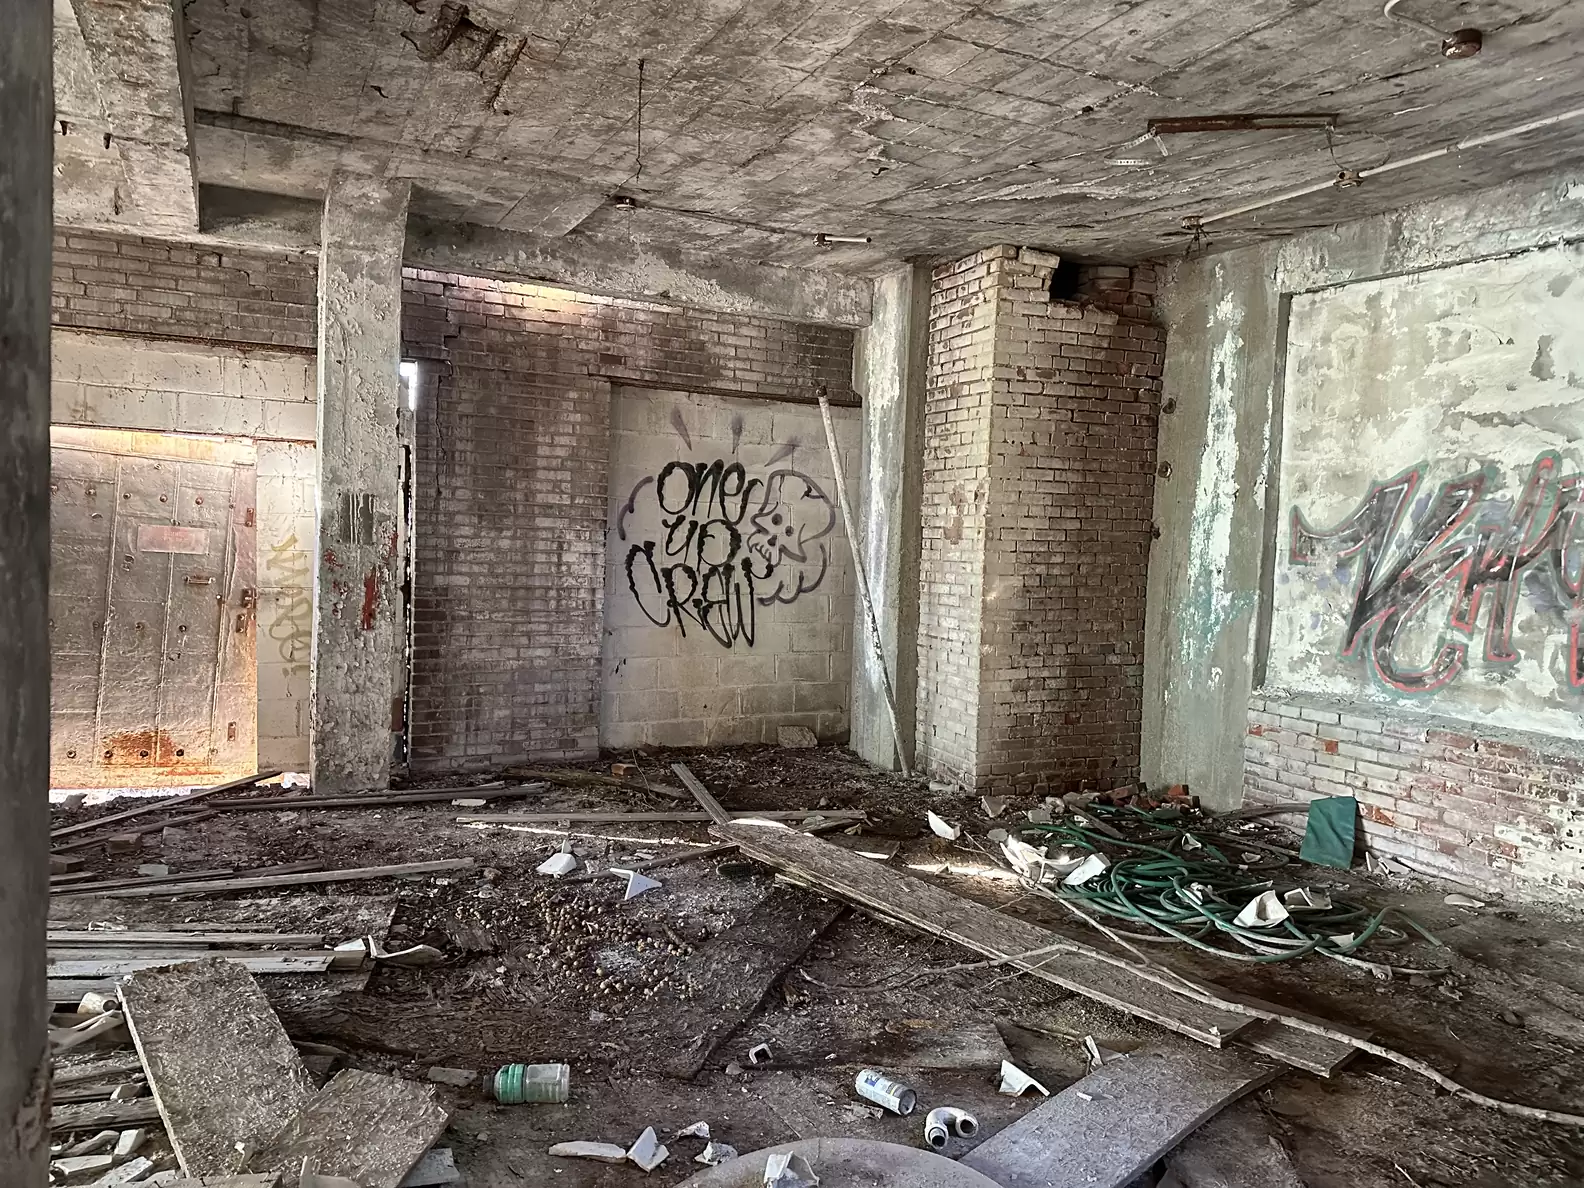 O local abandonado estava repleto de lixo e sinais de vandalismo. Foto: Reprodução/Stray Rescue of St. Louis